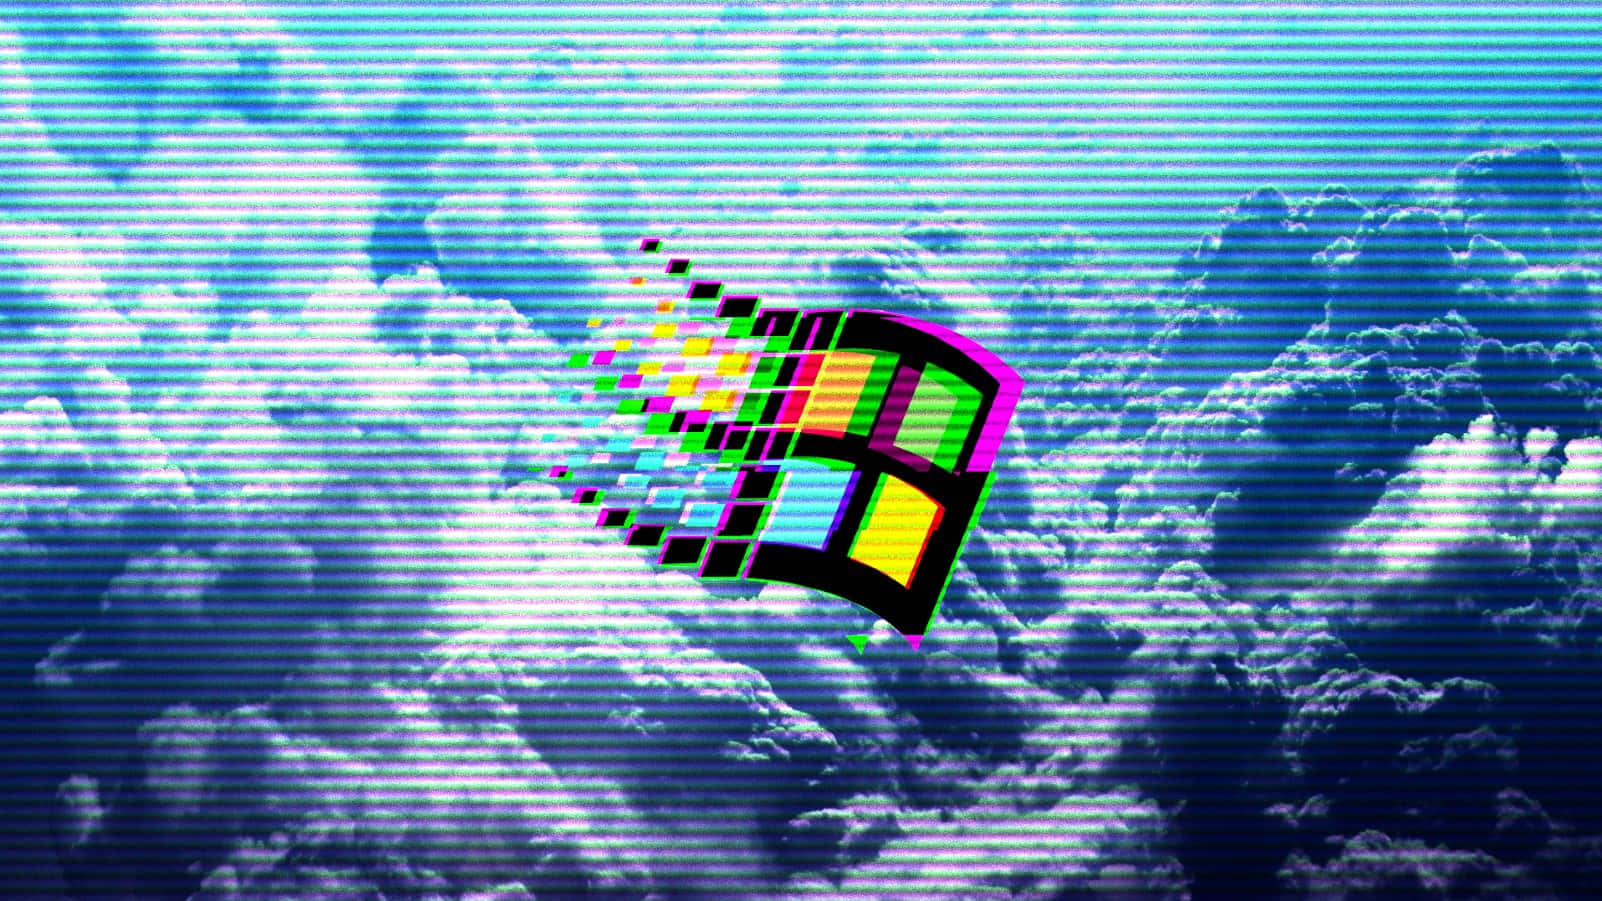 Engammaldags Nostalgitripp: Windows 98 Väcker Fortfarande Nostalgi.